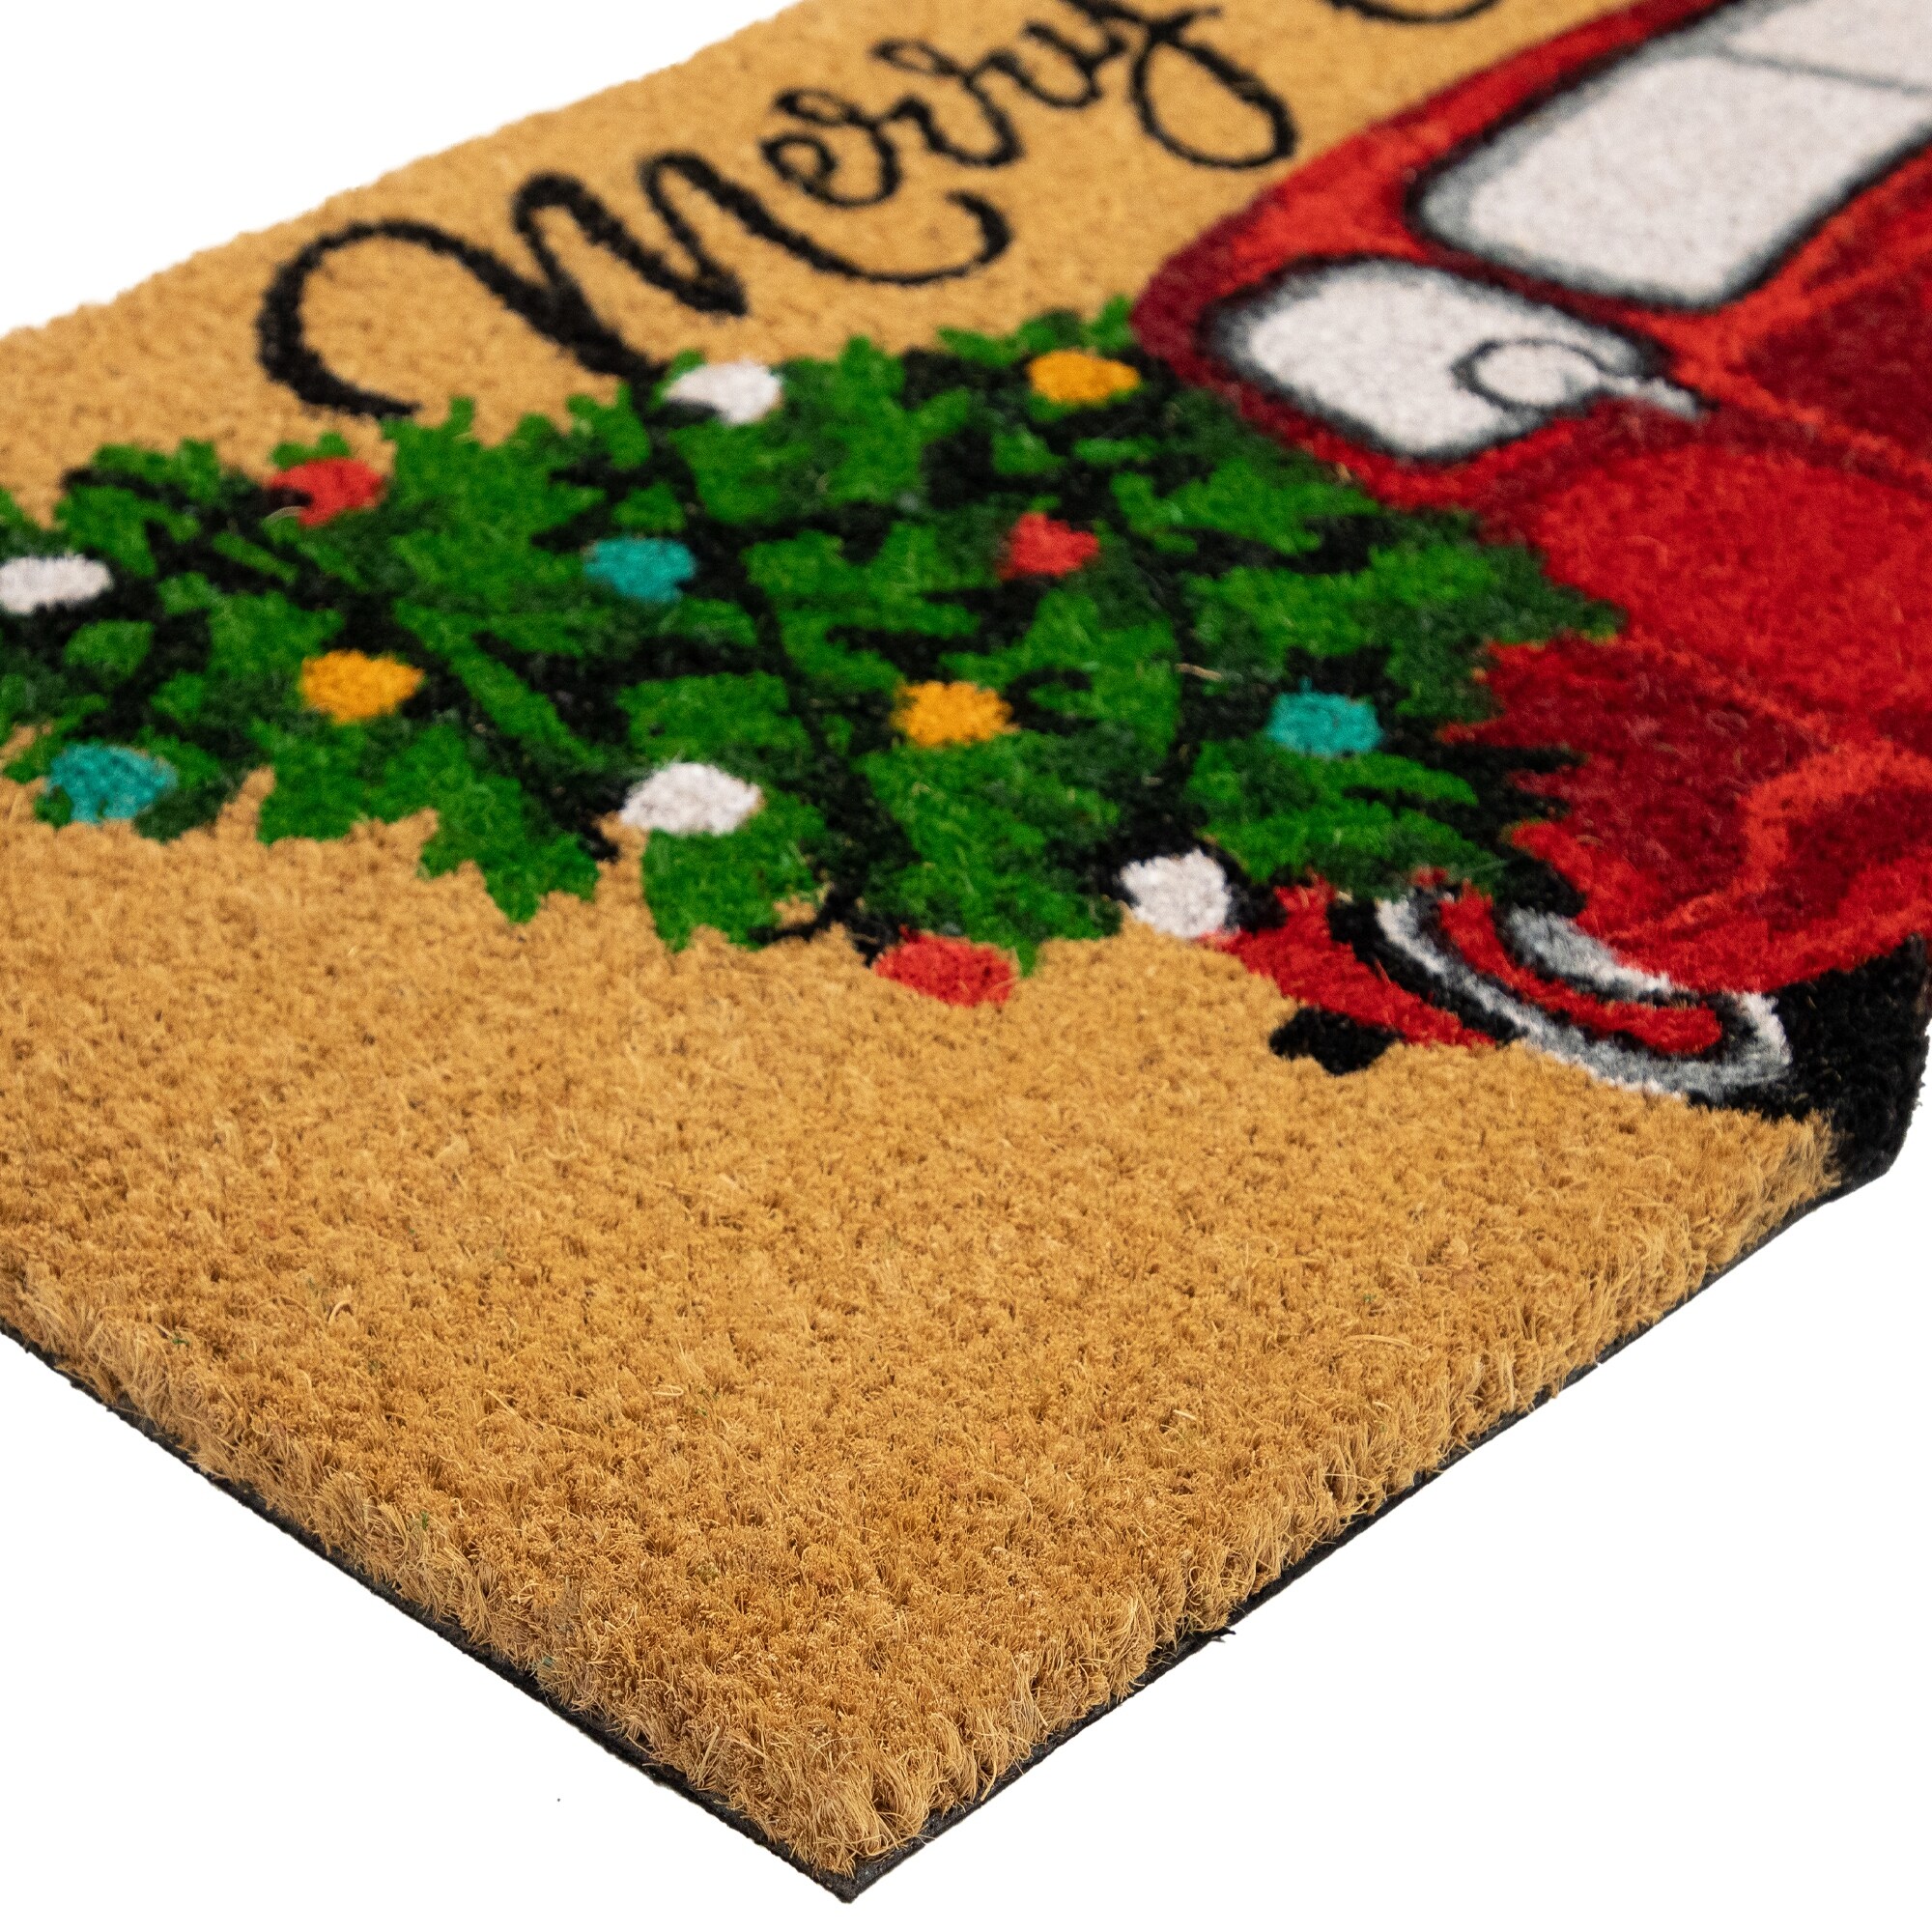 Doormat, Personalized Fall Red Truck Doormat - 18 X 30, Outdoor